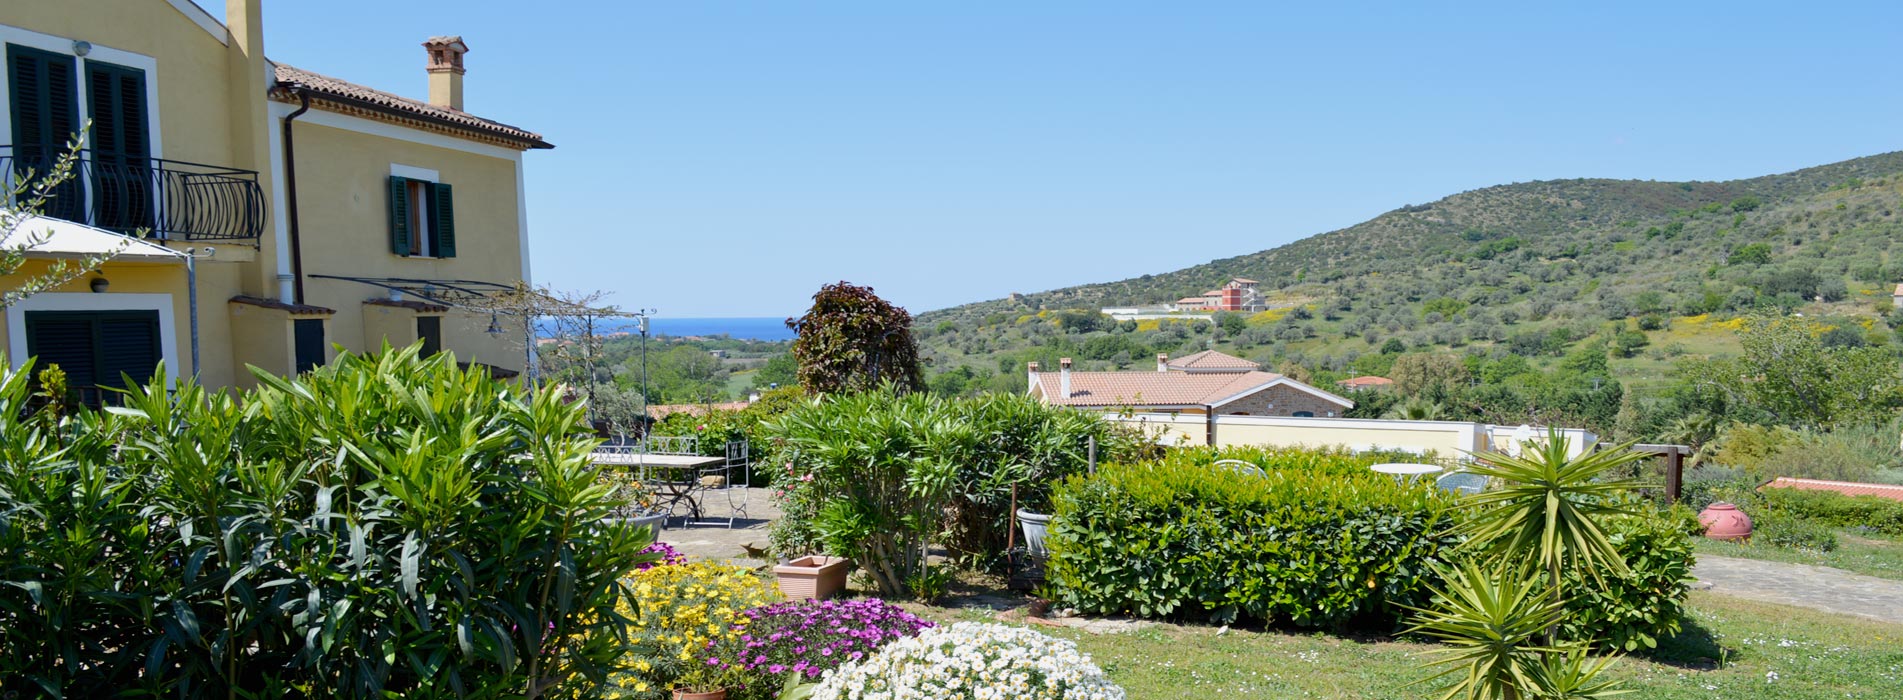 Tenuta Mezzorecchio, Ferienwohnungen im grünen mit Blick aufs Meer